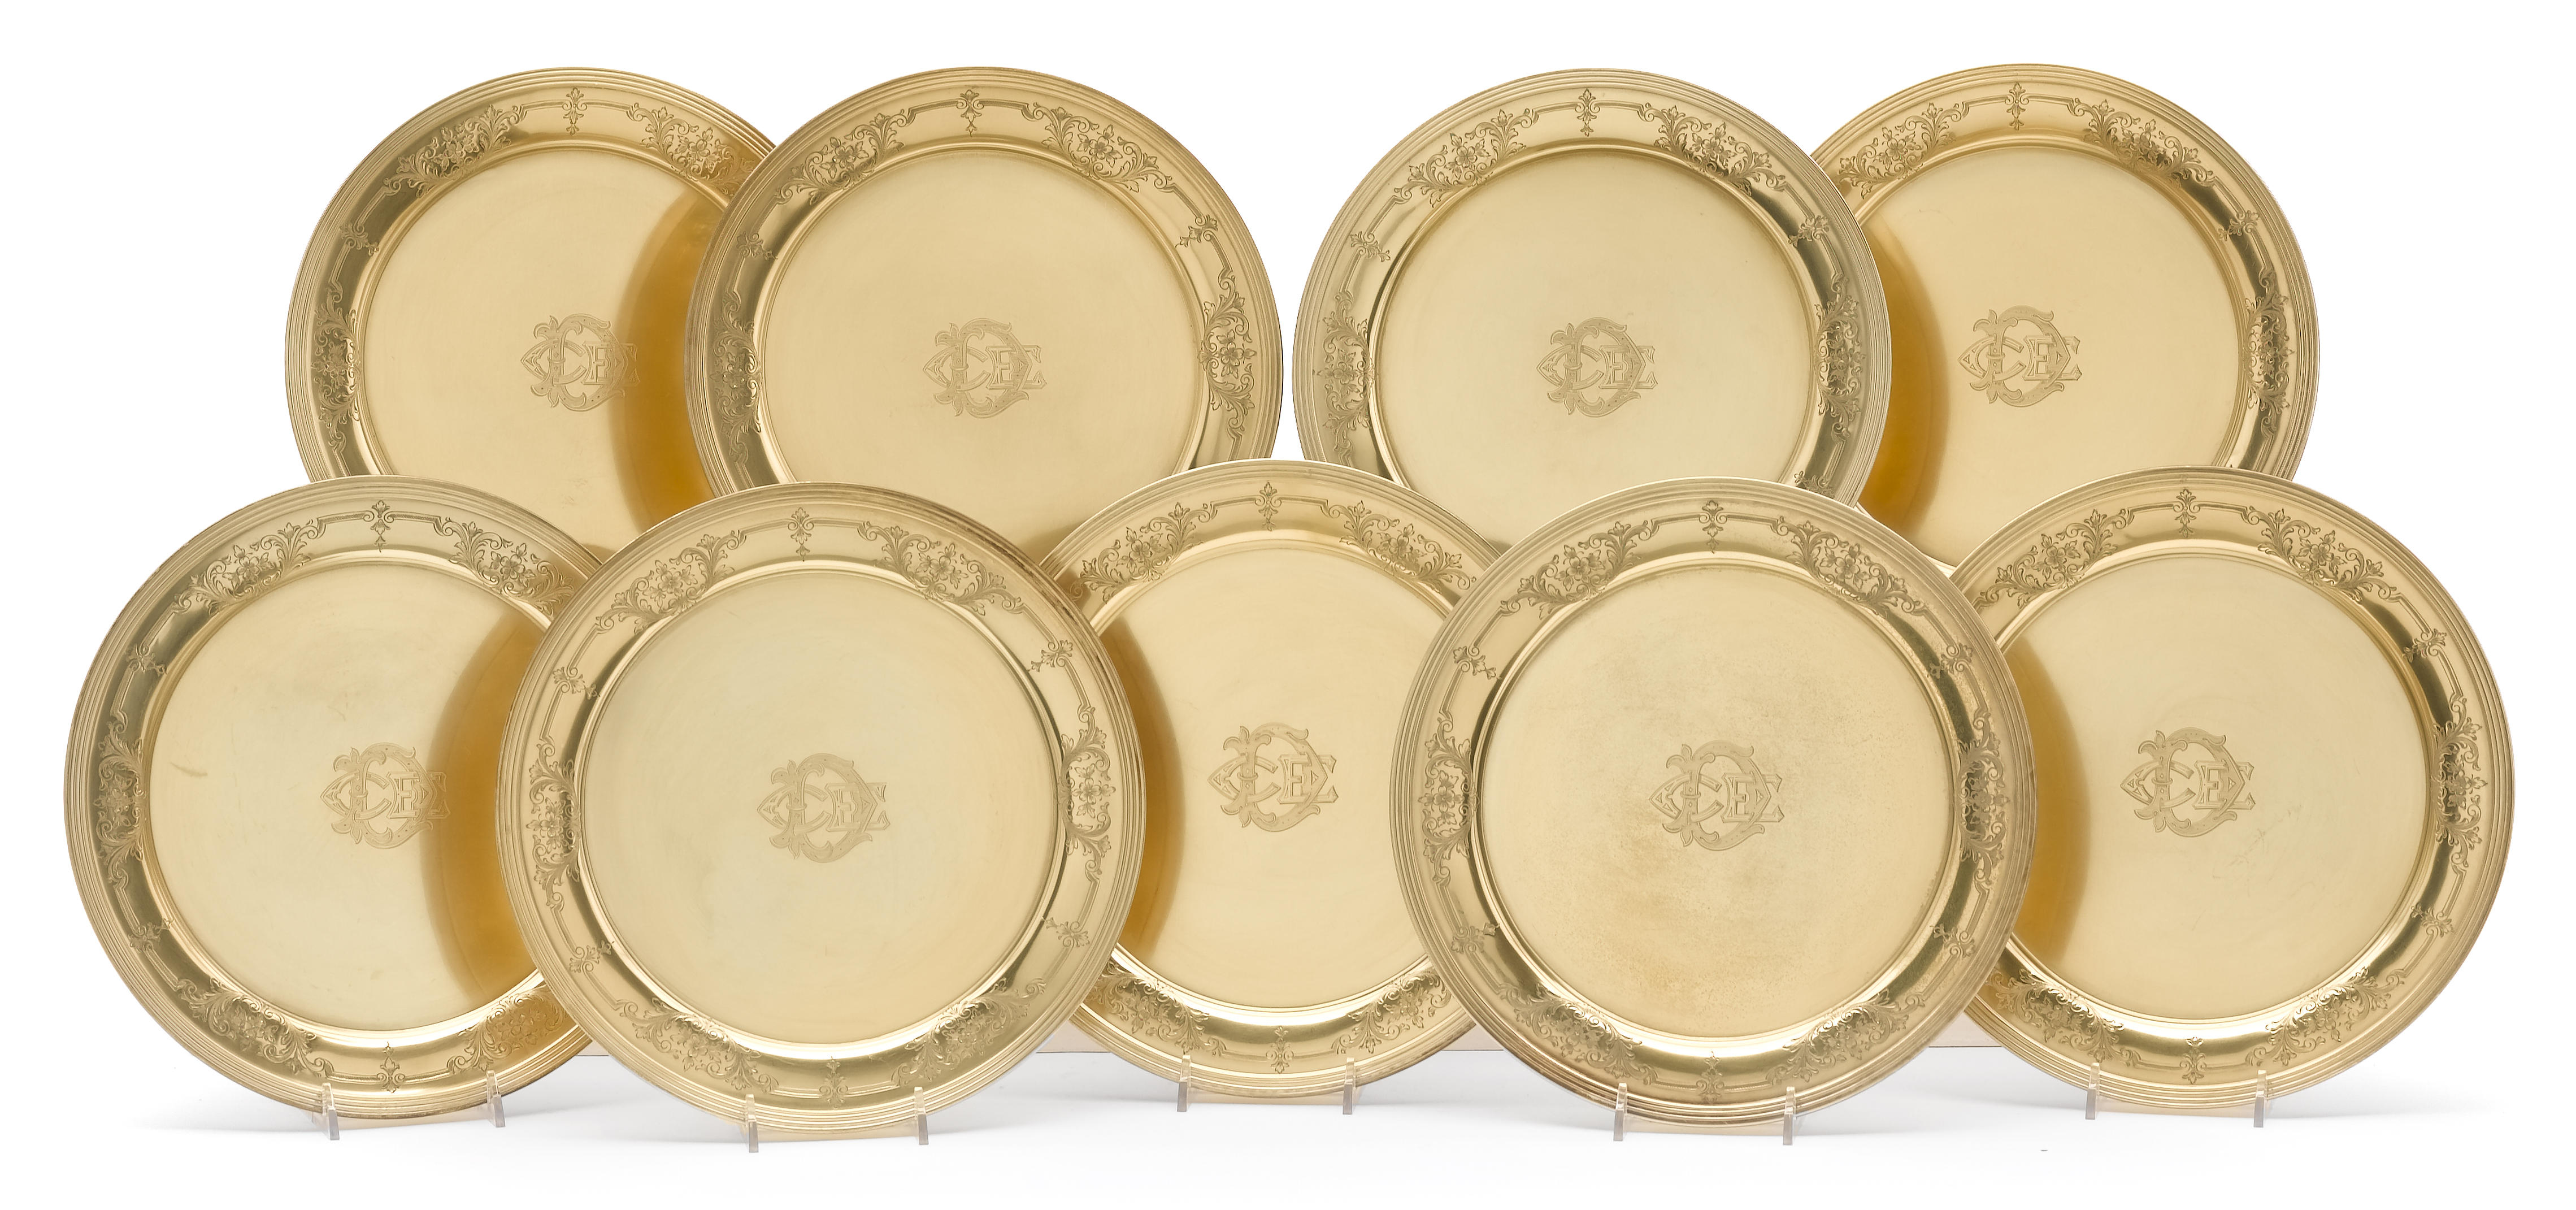 A sterling gilt set of eighteen 1290fd